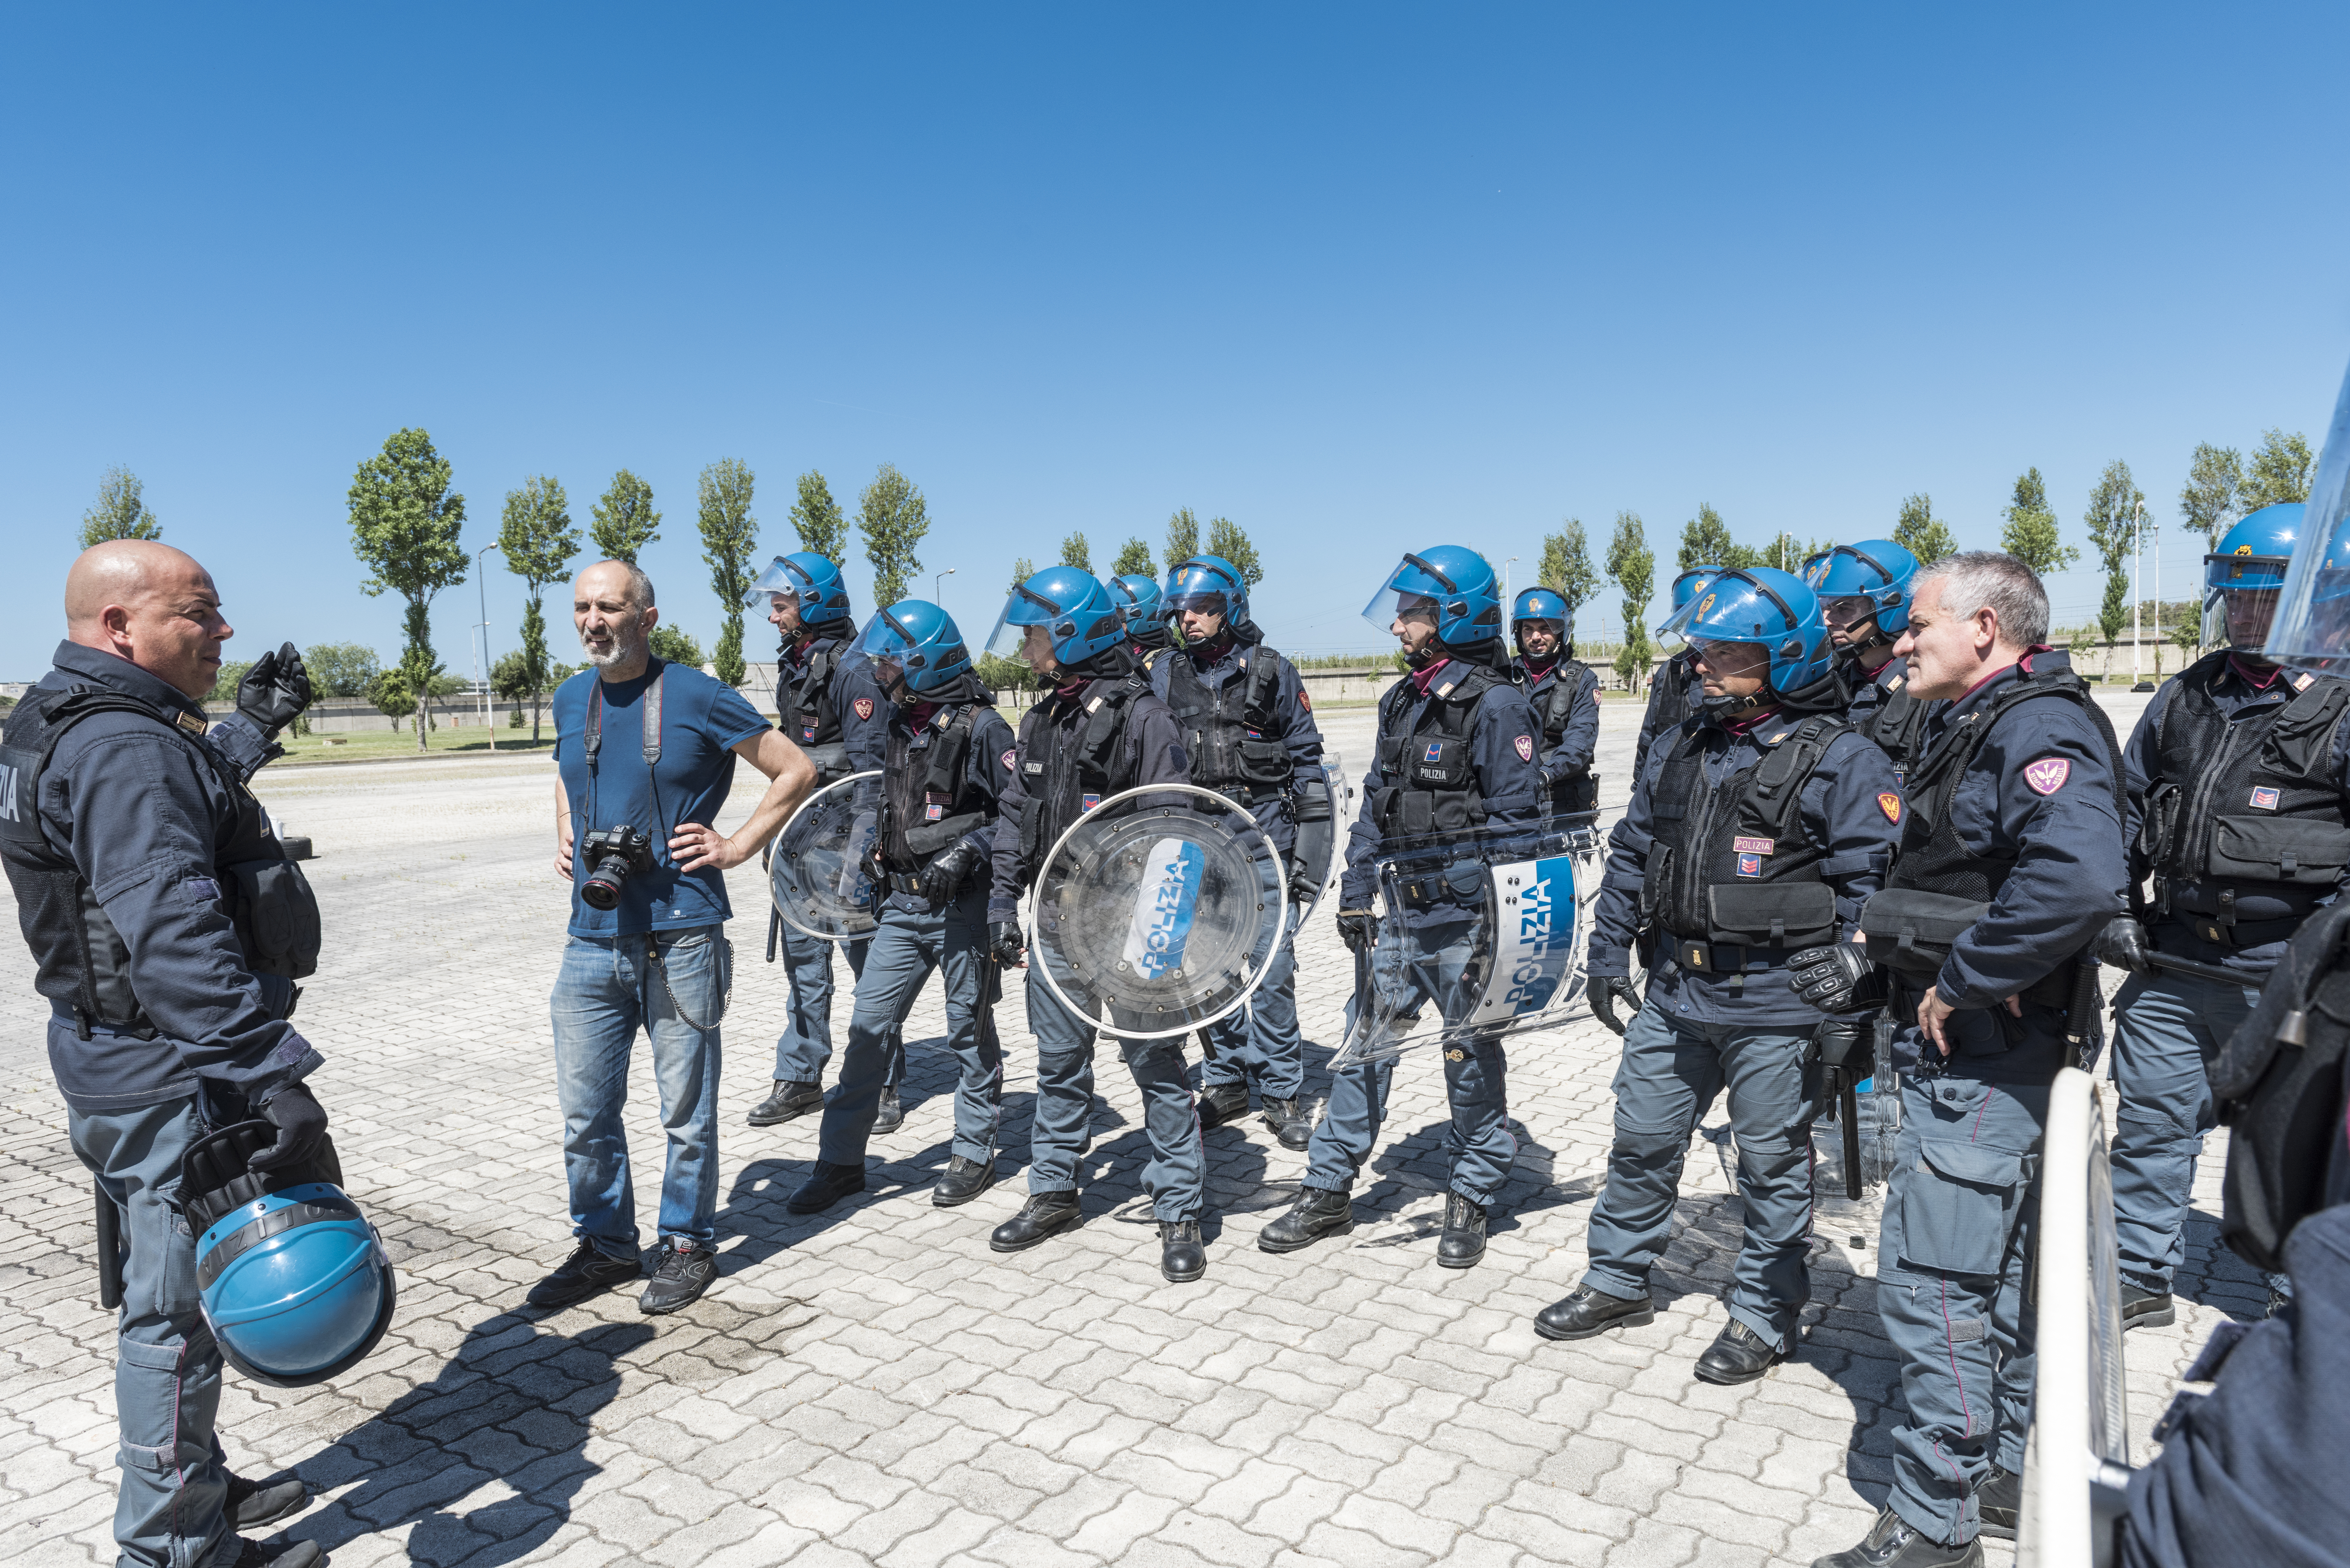 Le immagini del basckstage del calendario della Polizia di Stato per il 2018